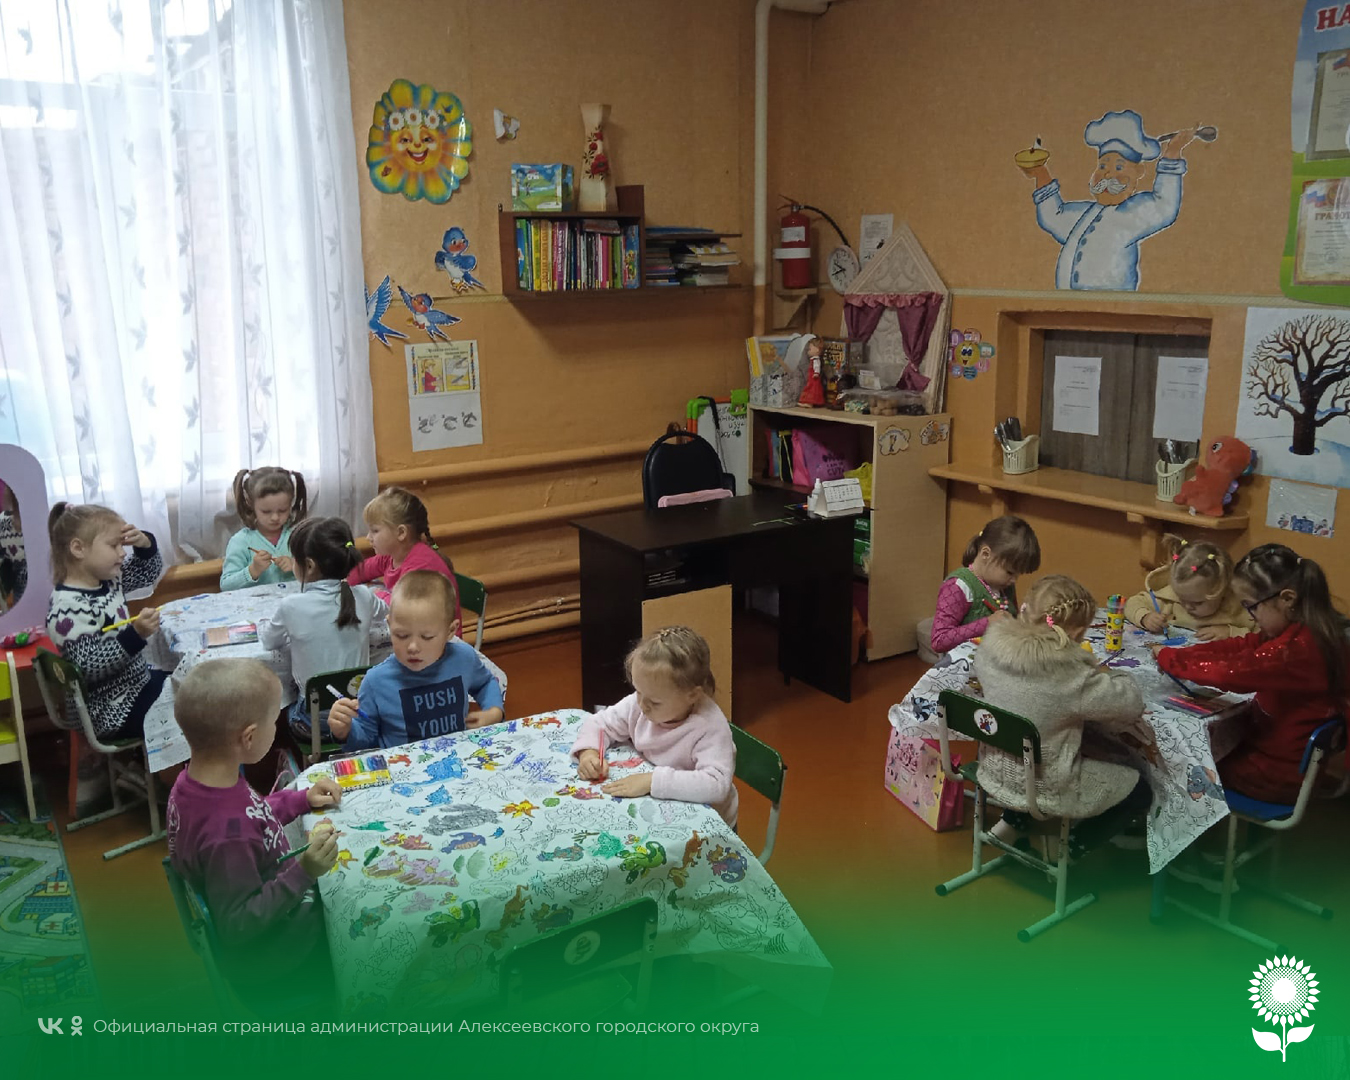 В детских садах Алексеевского городского округа прошёл День раскрашивания